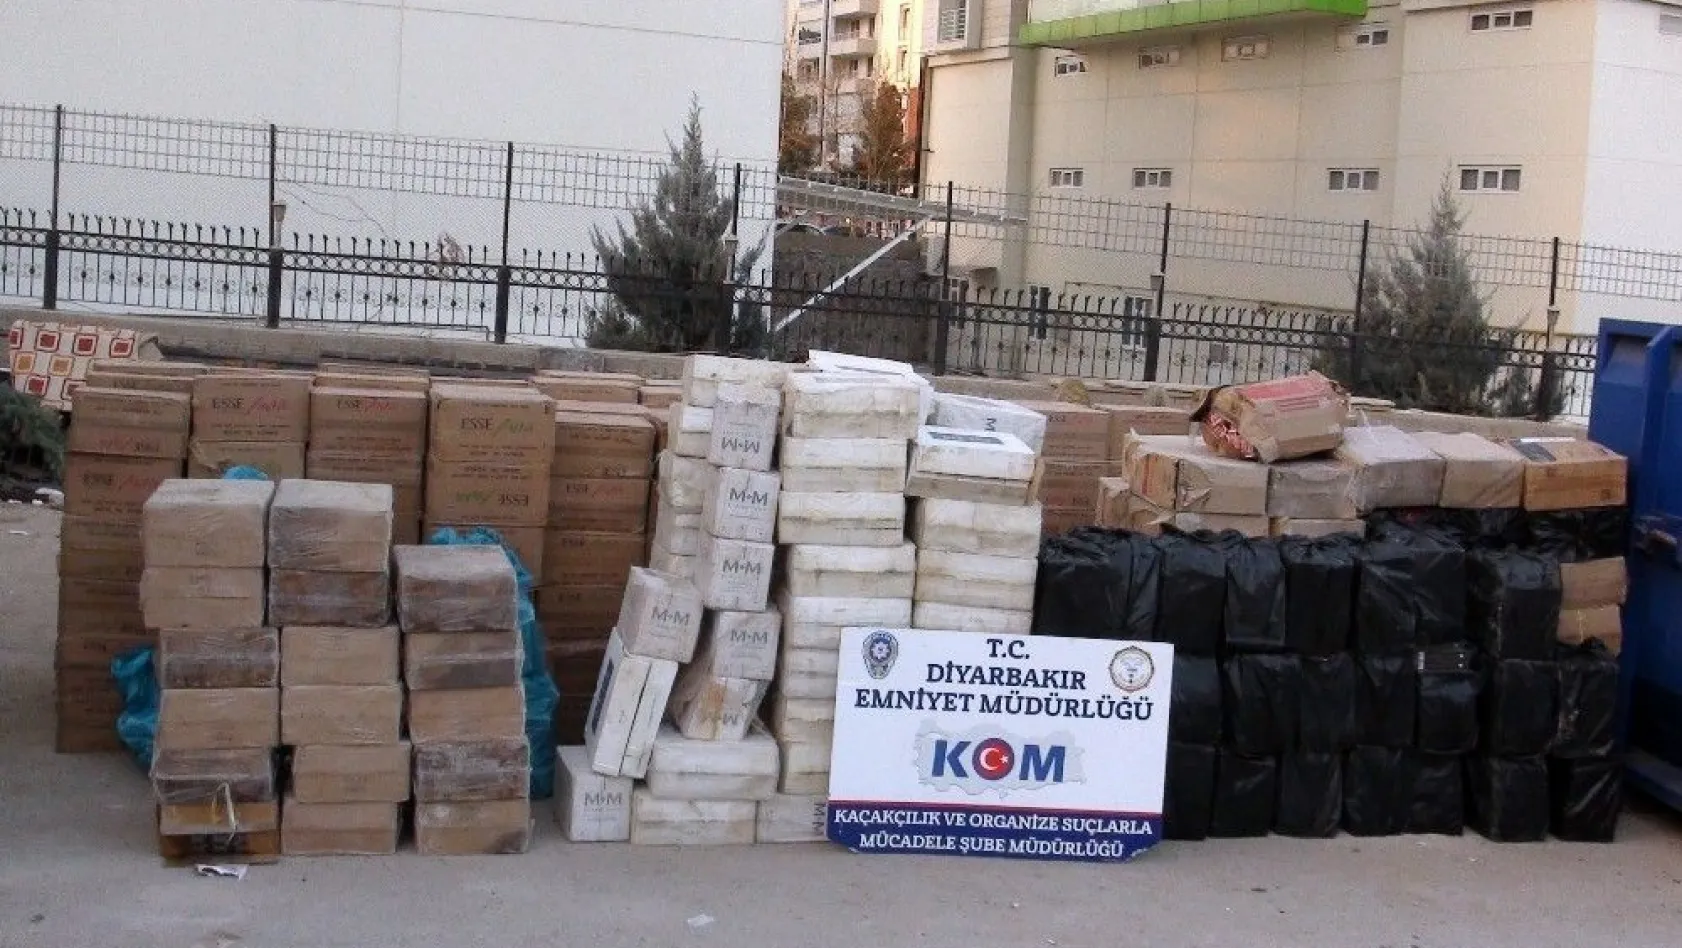 Diyarbakır'da 327 bin 400 paket kaçak sigara ele geçirildi
